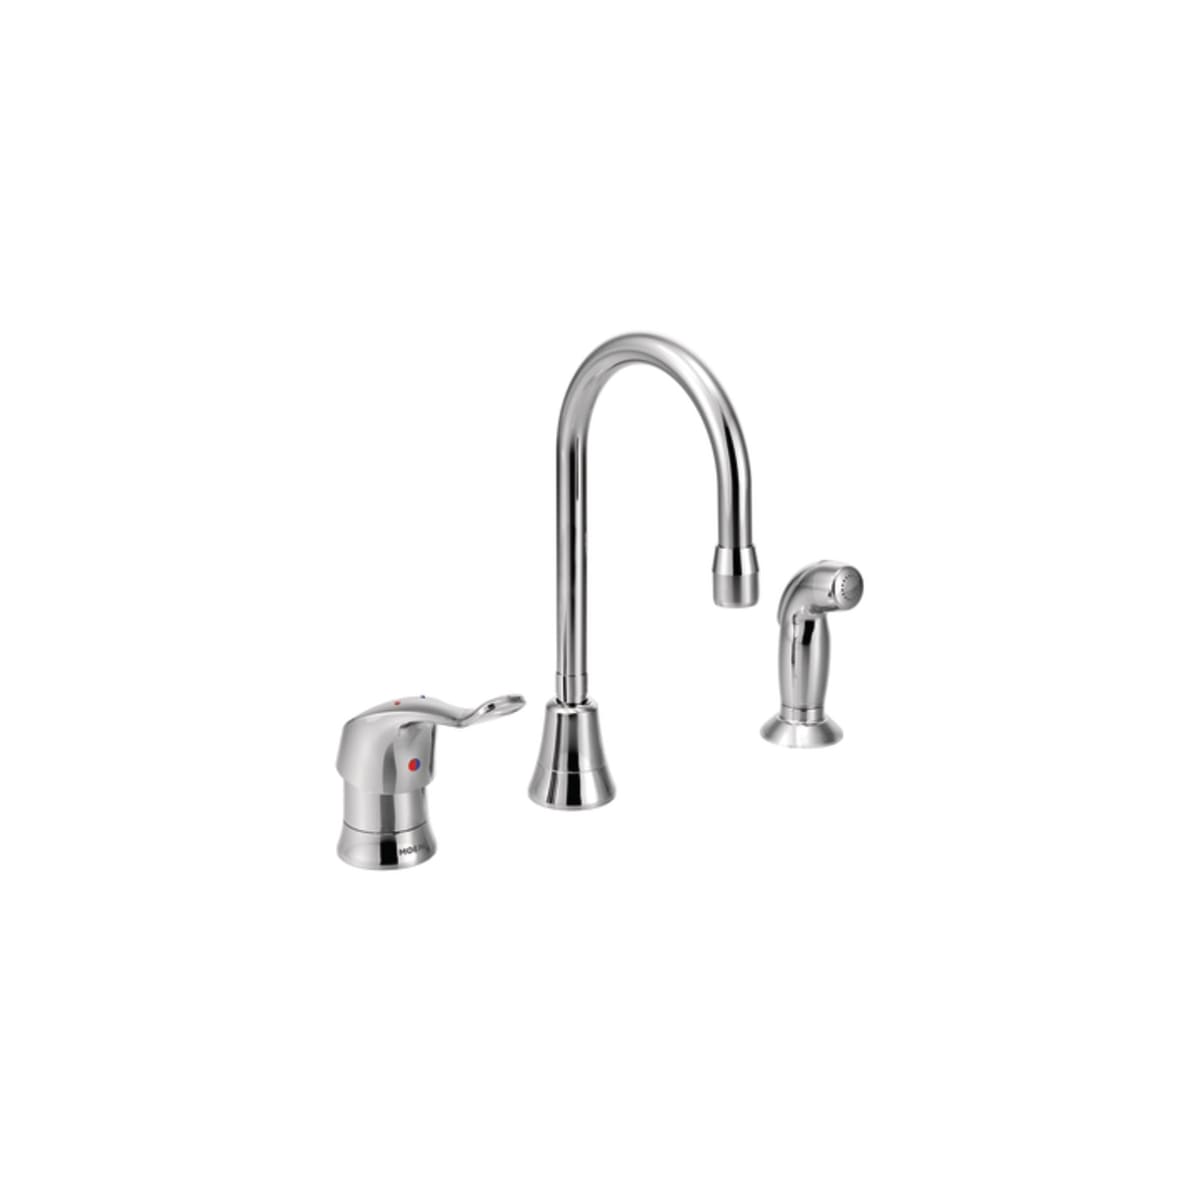 Moen A112 181 M Kitchen Faucet | Kitchen Faucets